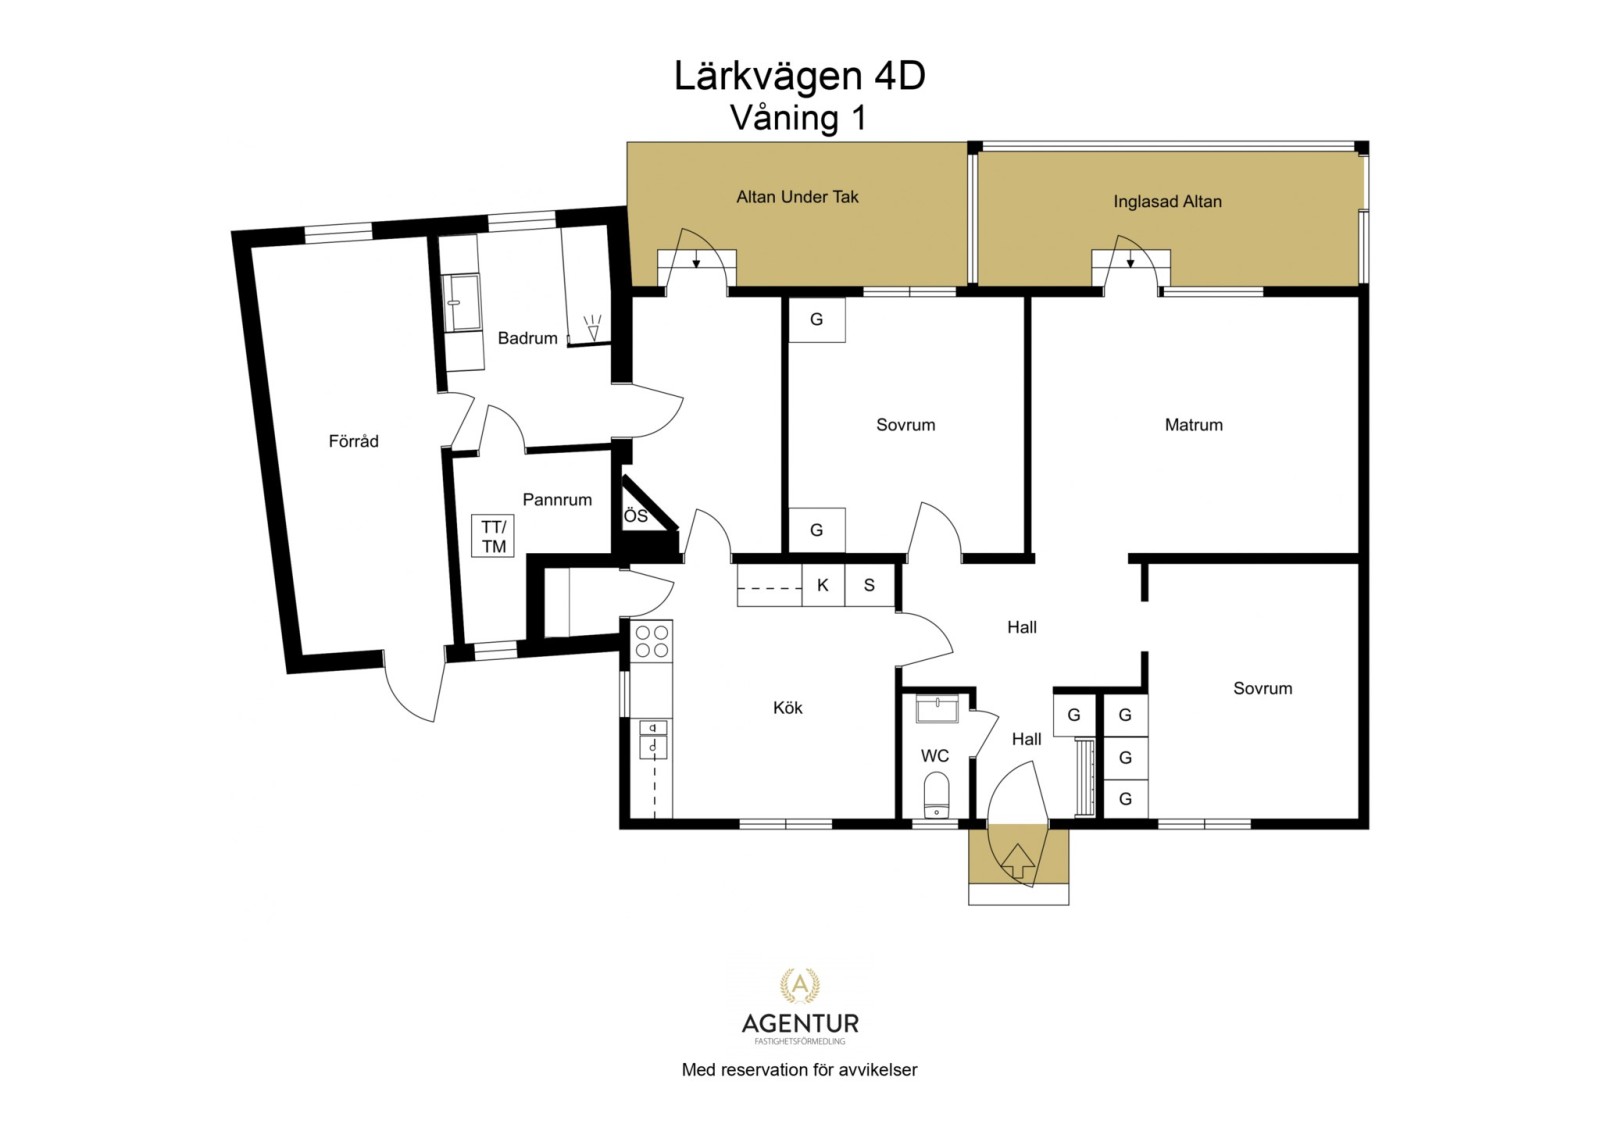 2D Floor Plan - Våning 1 - Letterhead Lärkvägen 4D